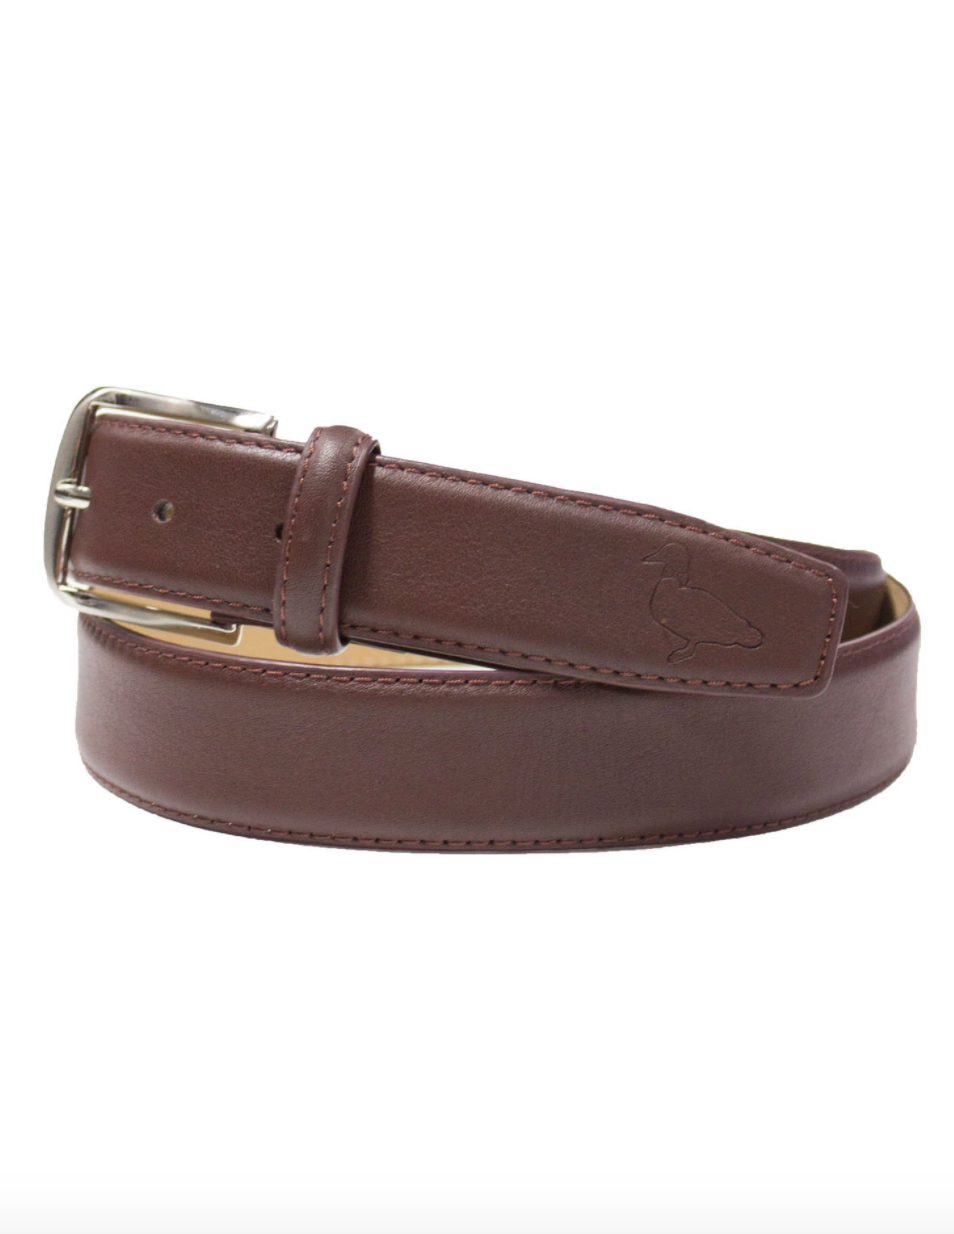 PT Leather Belt